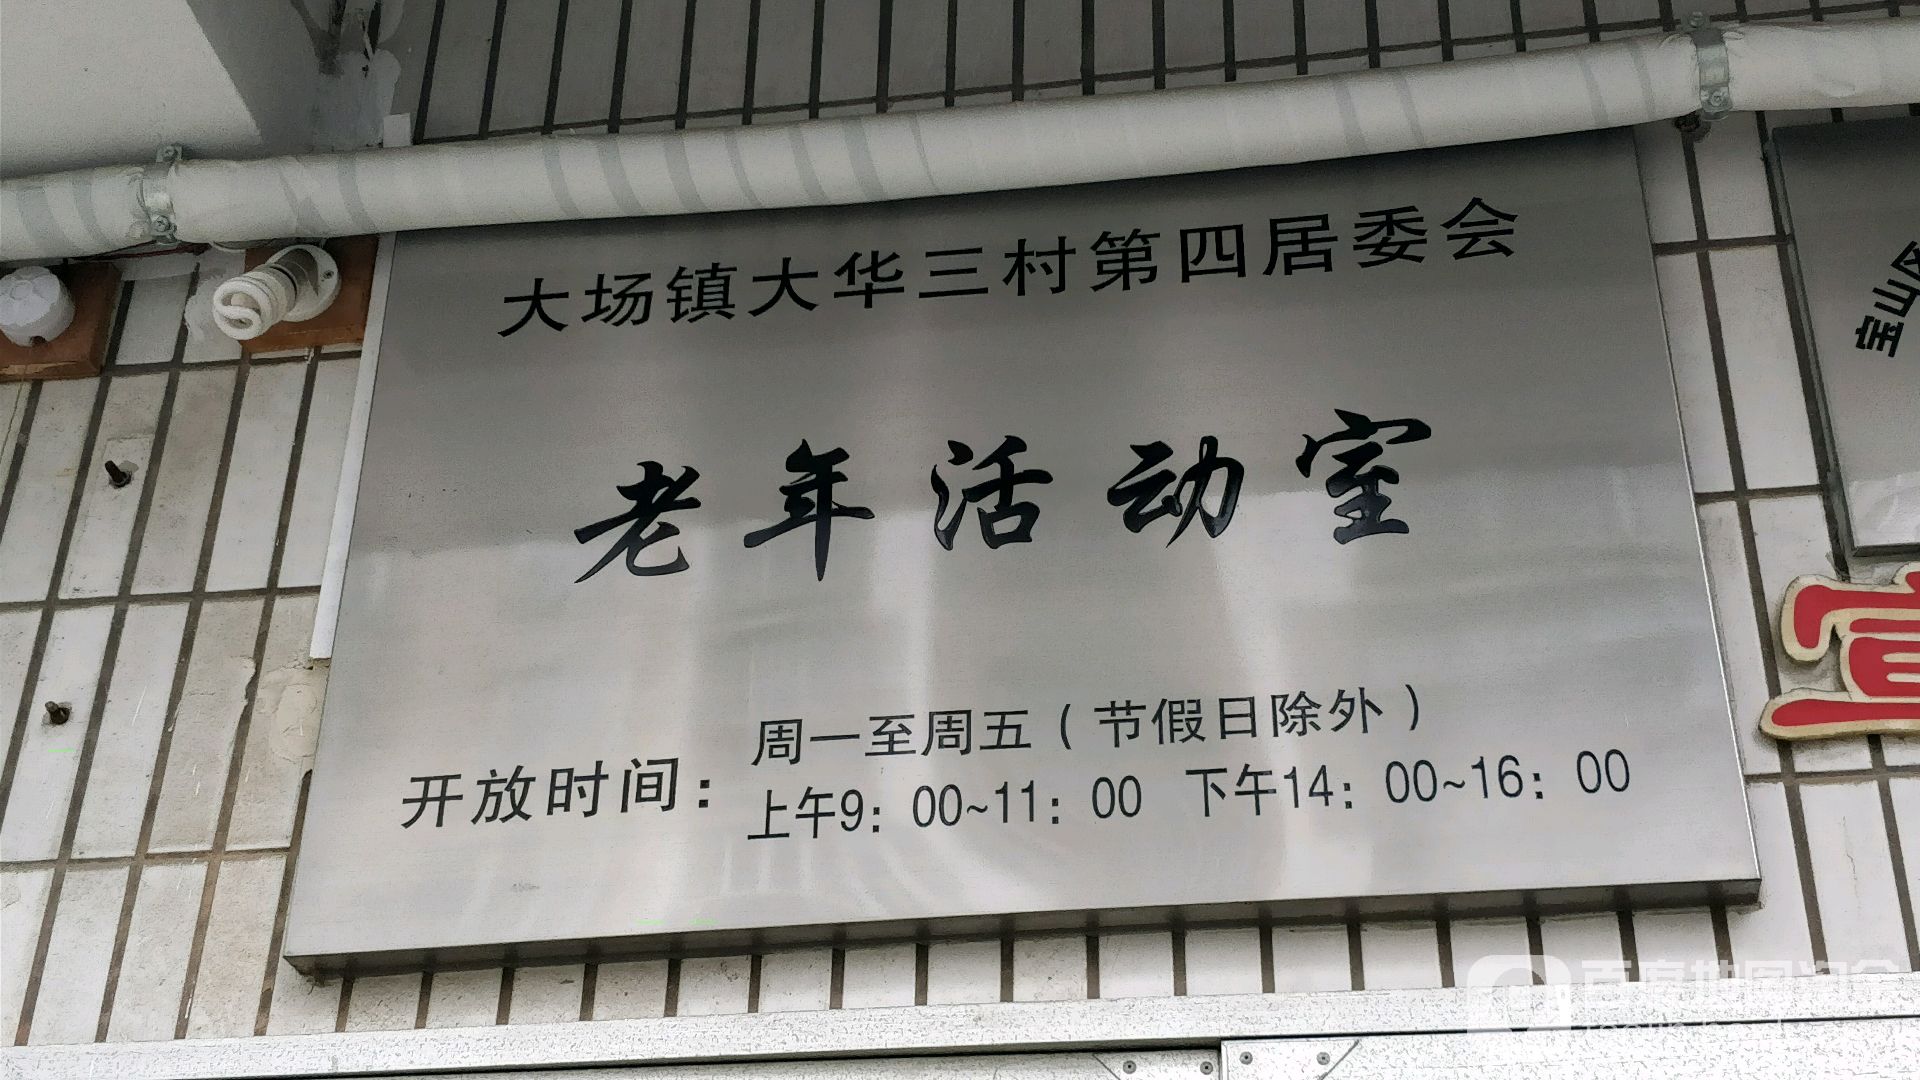 大场镇大华三村第四居委会老年活动室 地址:上海